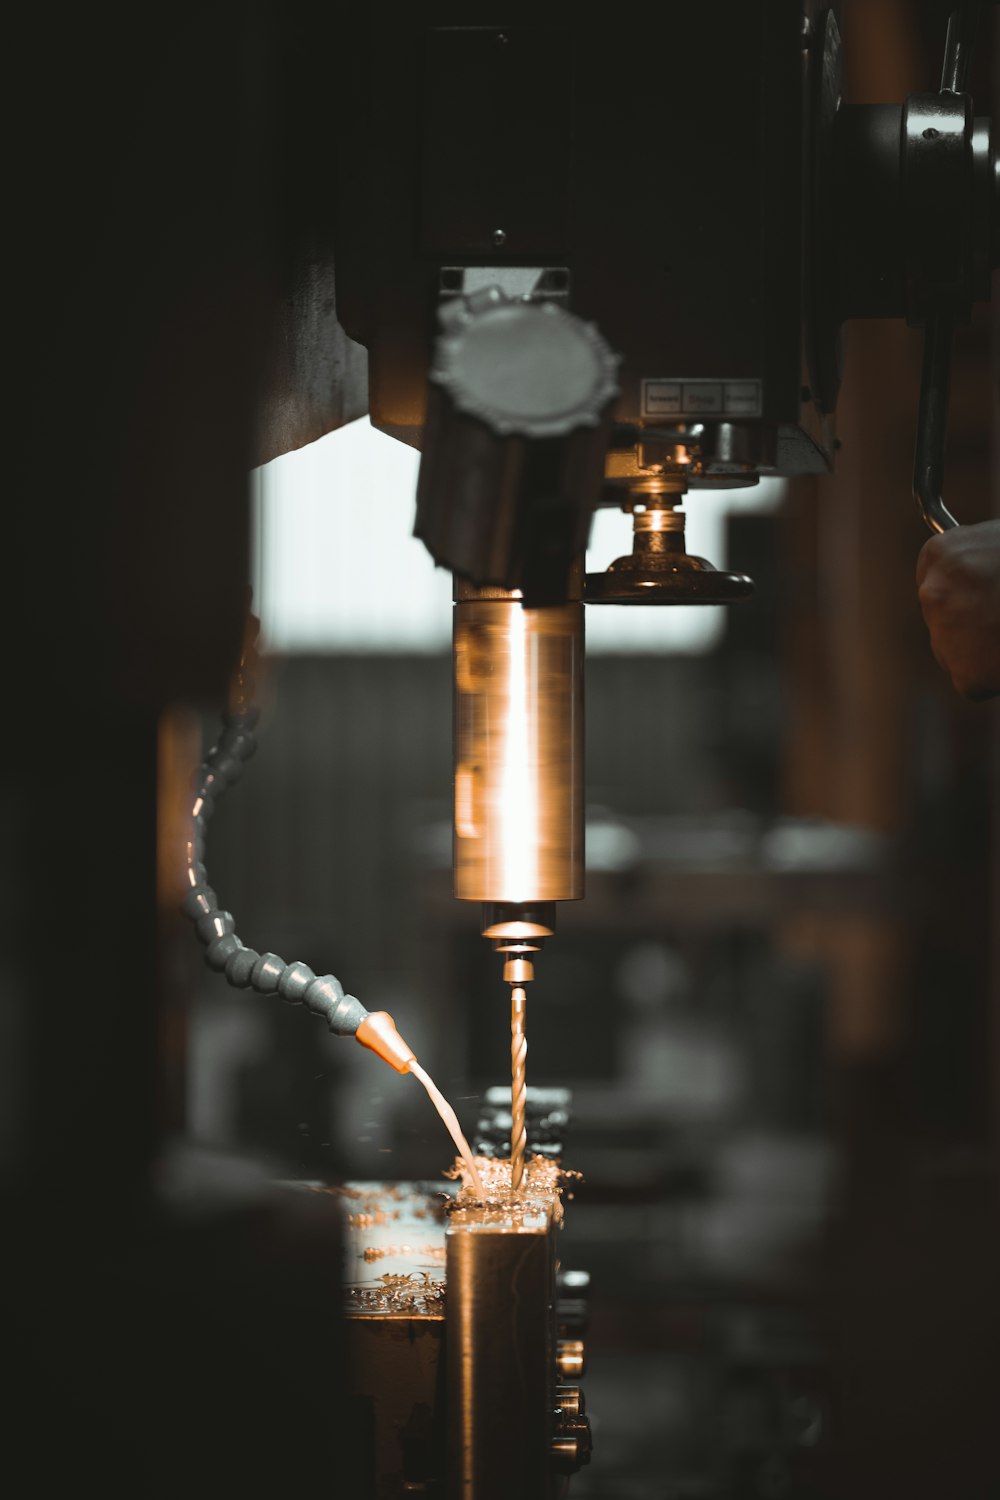 a machine cutting a piece of metal in a factory